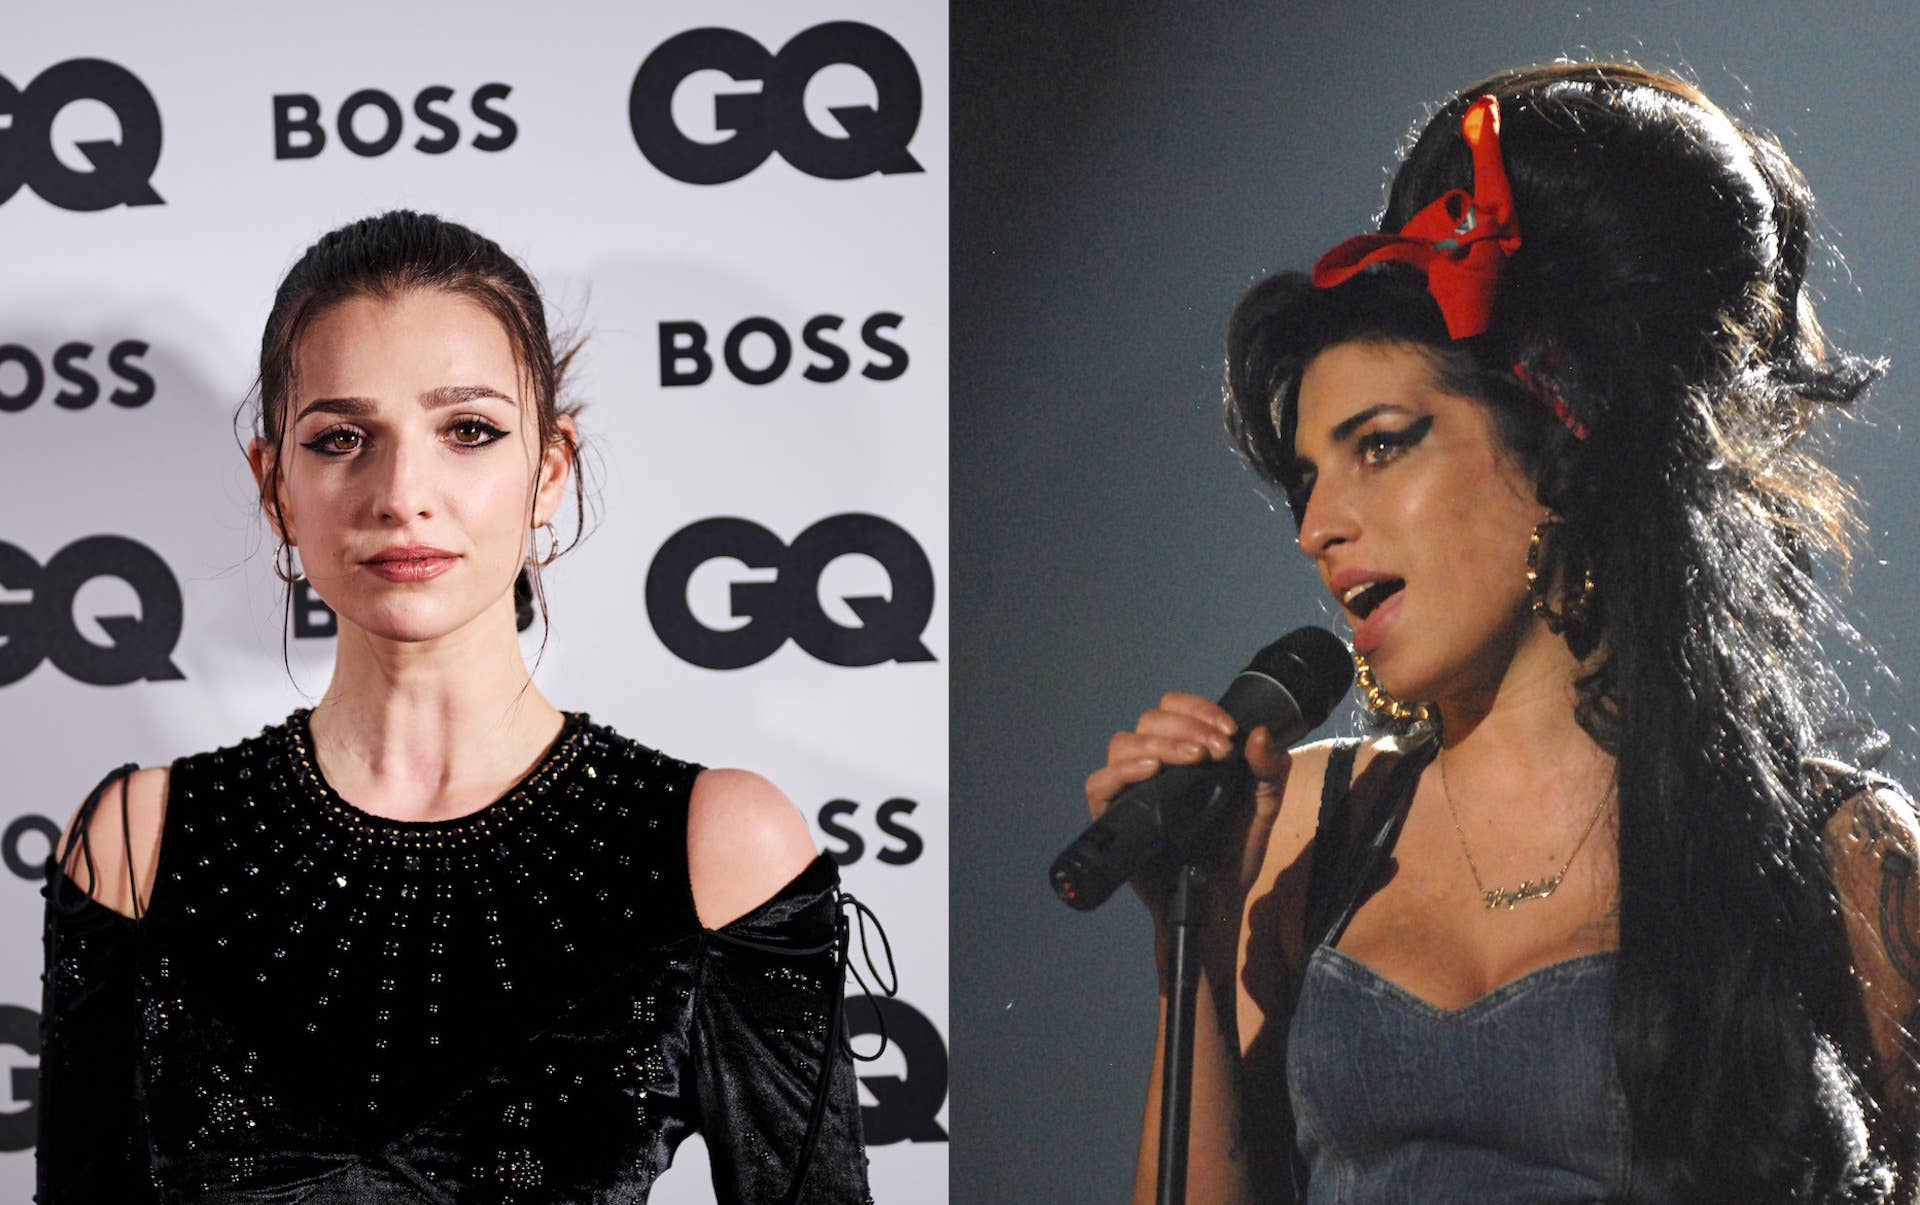 Marisa Abela and Amy Winehouse